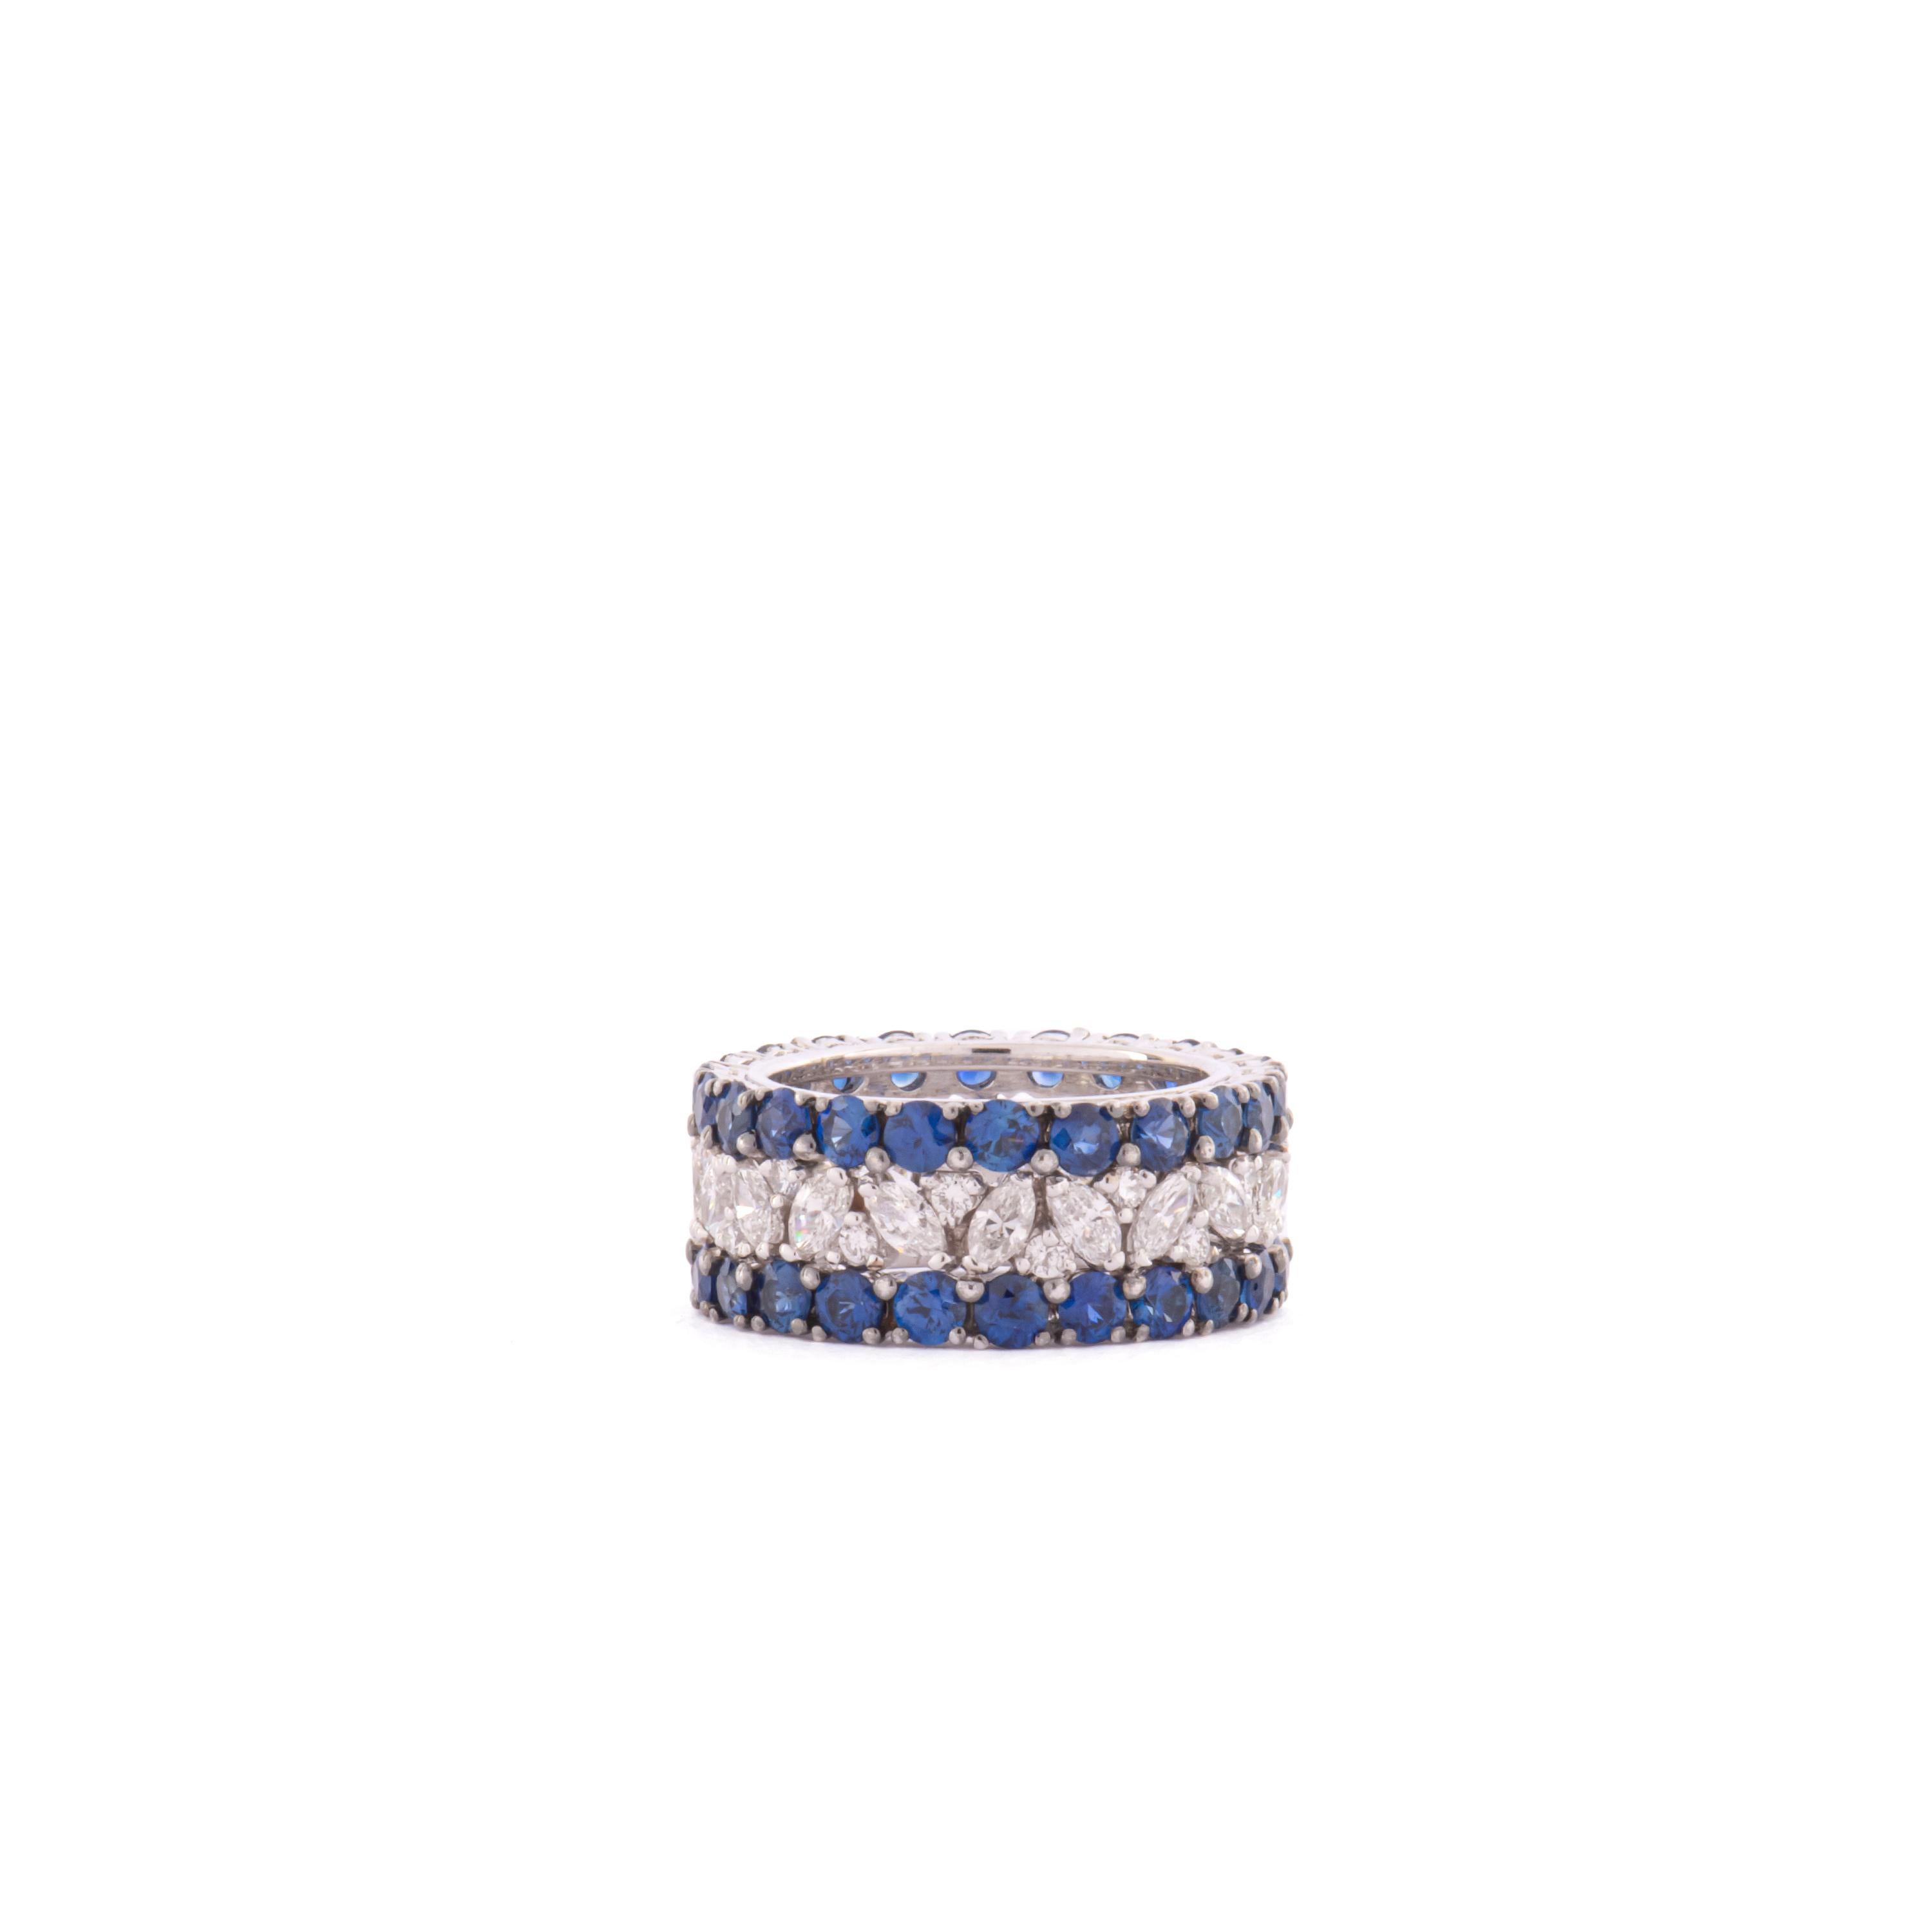 Schöner Ring aus 18 Kt Weißgold mit Diamanten, Brillantschliff  ct. 0,36, Brillanten ct. 1,60 und blauen Saphiren ct. 4,23.

Größe 12 Italienisch